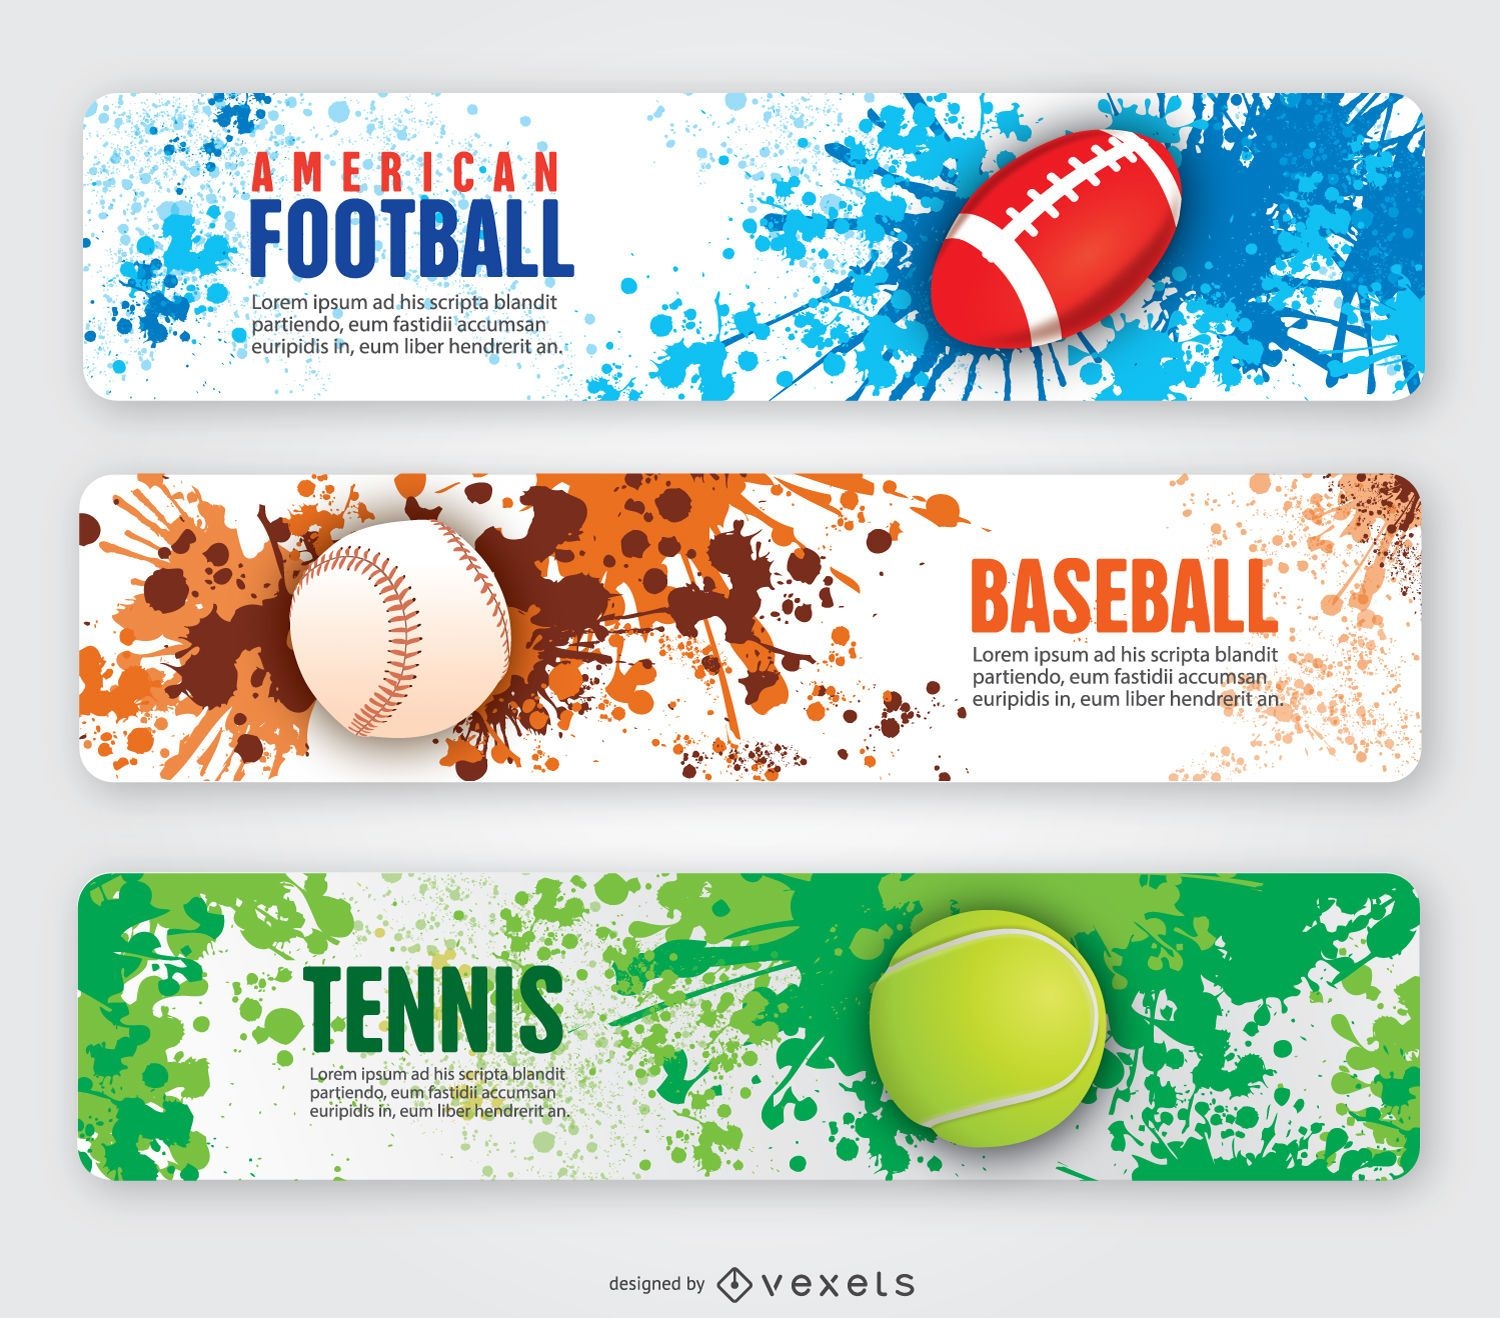 Banners de tenis y béisbol de fútbol americano